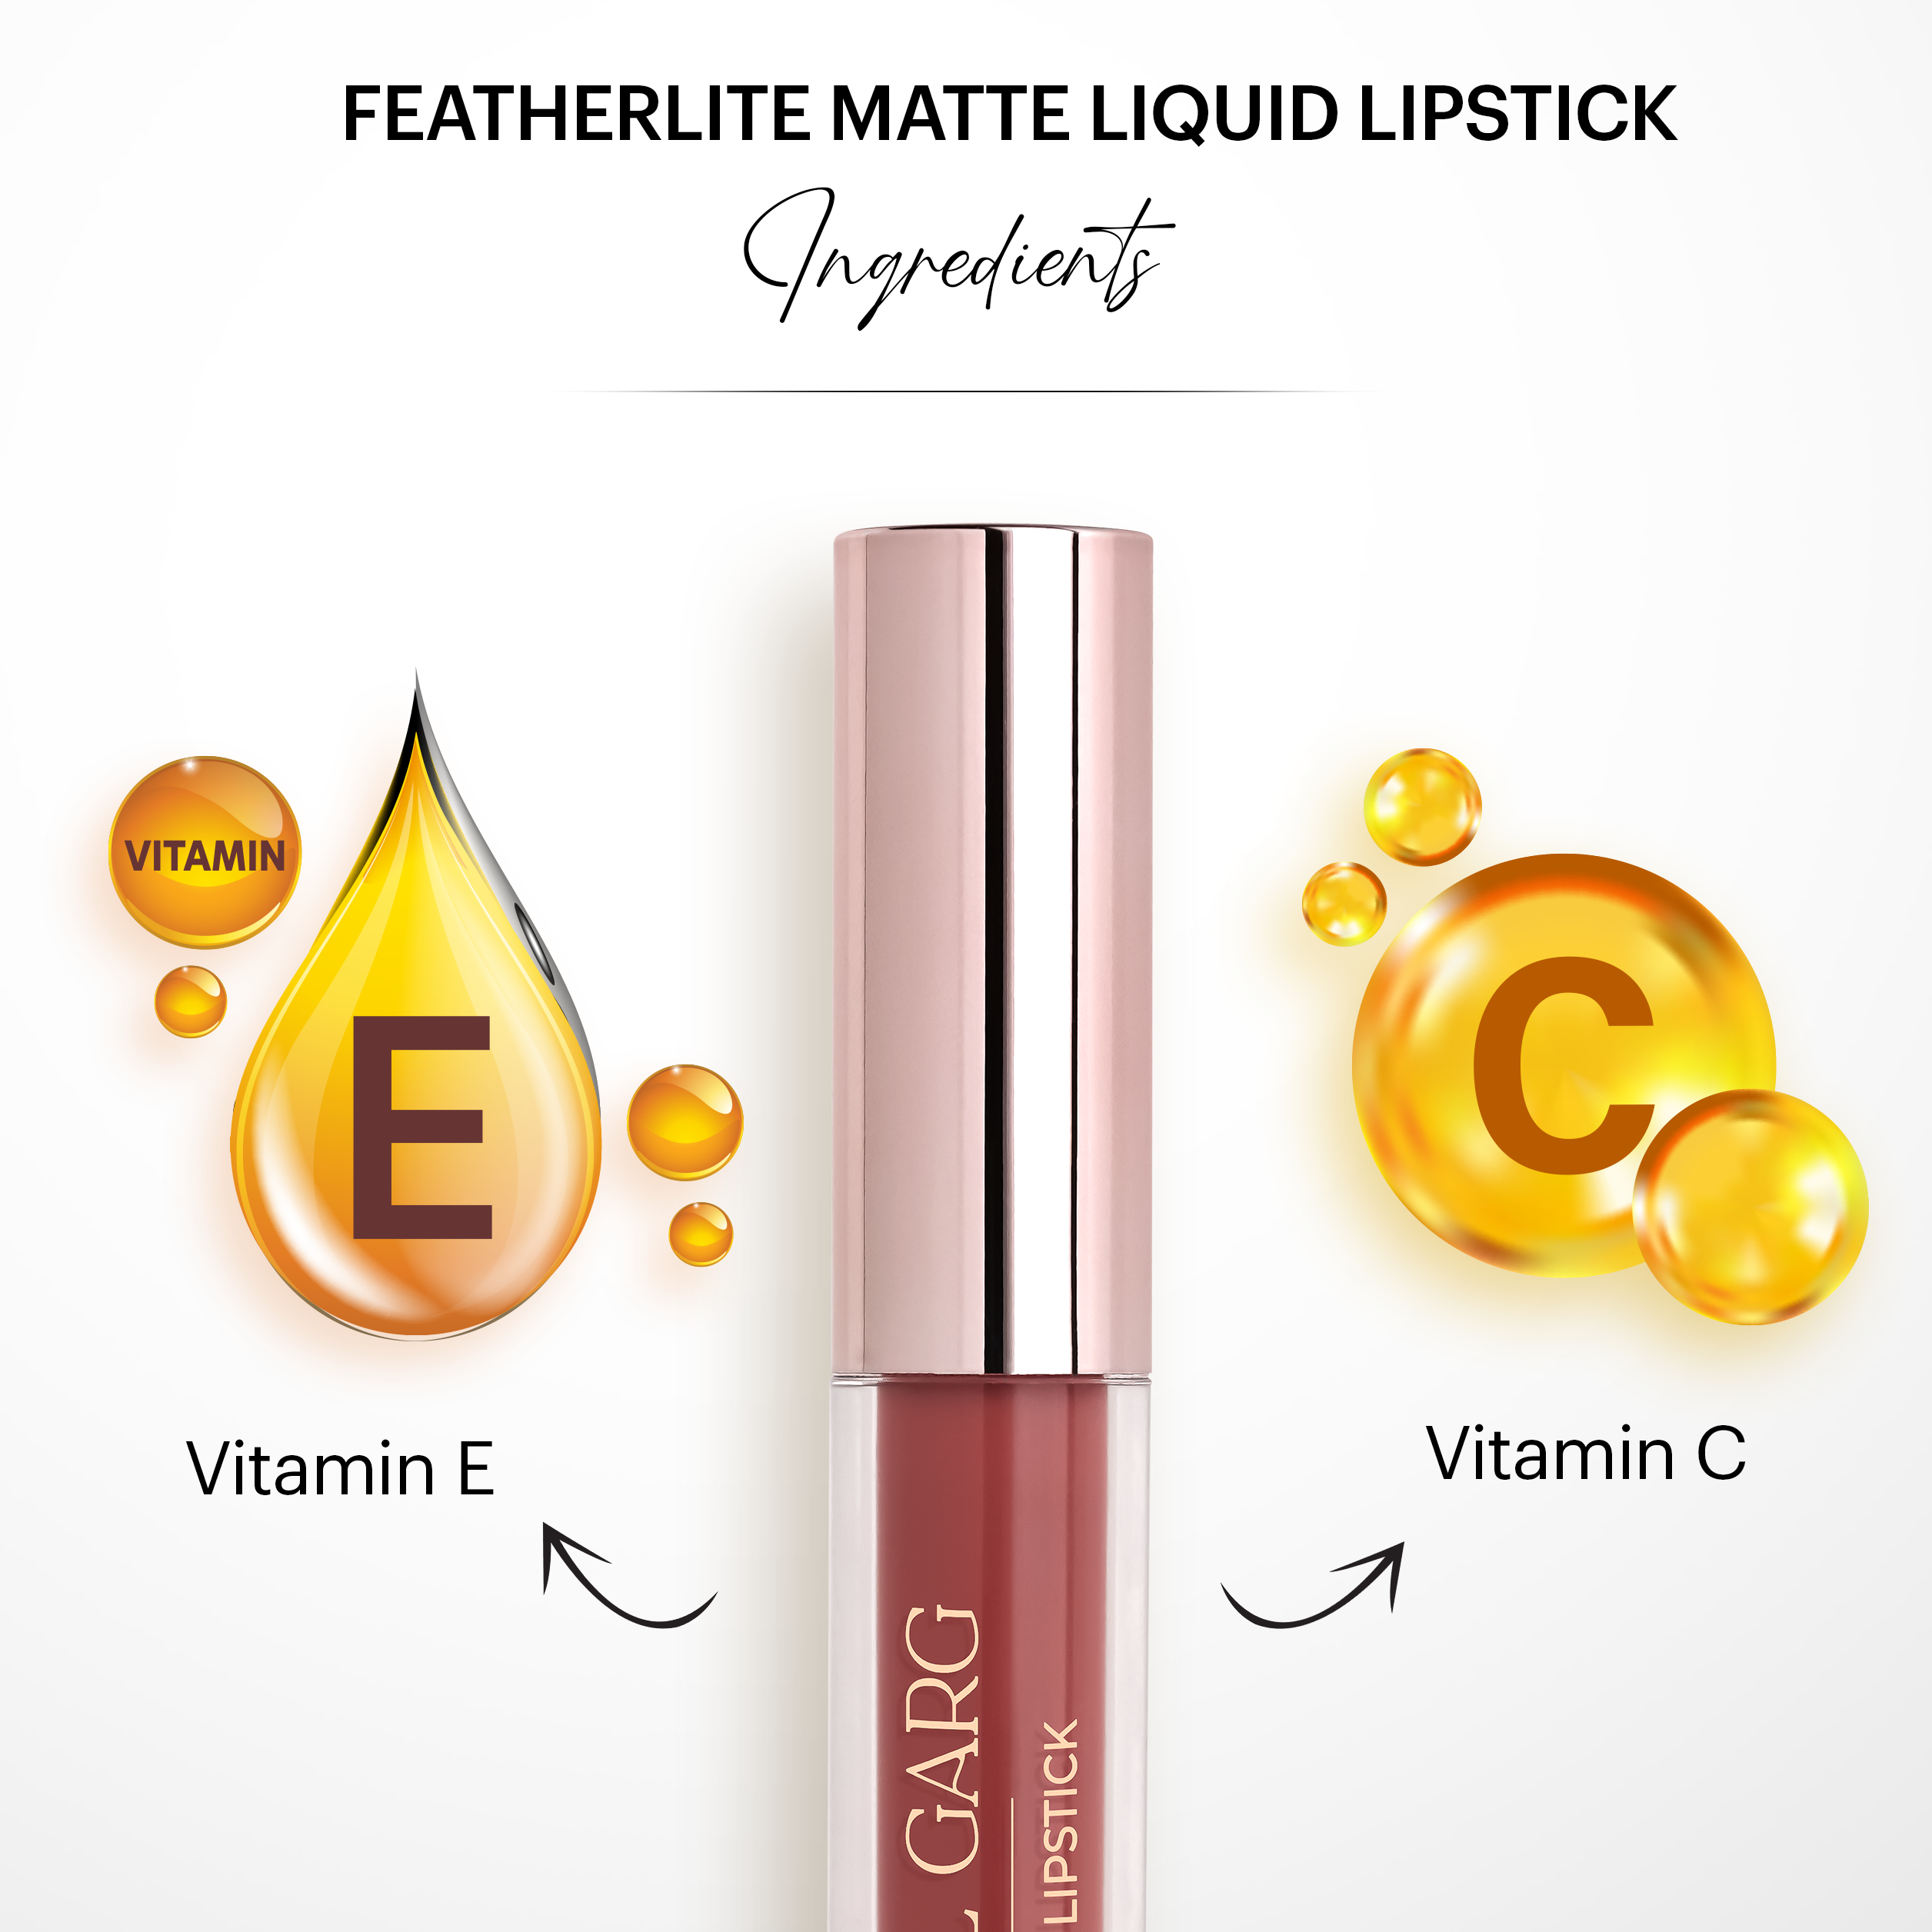 Featherlite Matte Liquid Lipstick: Addicted 23